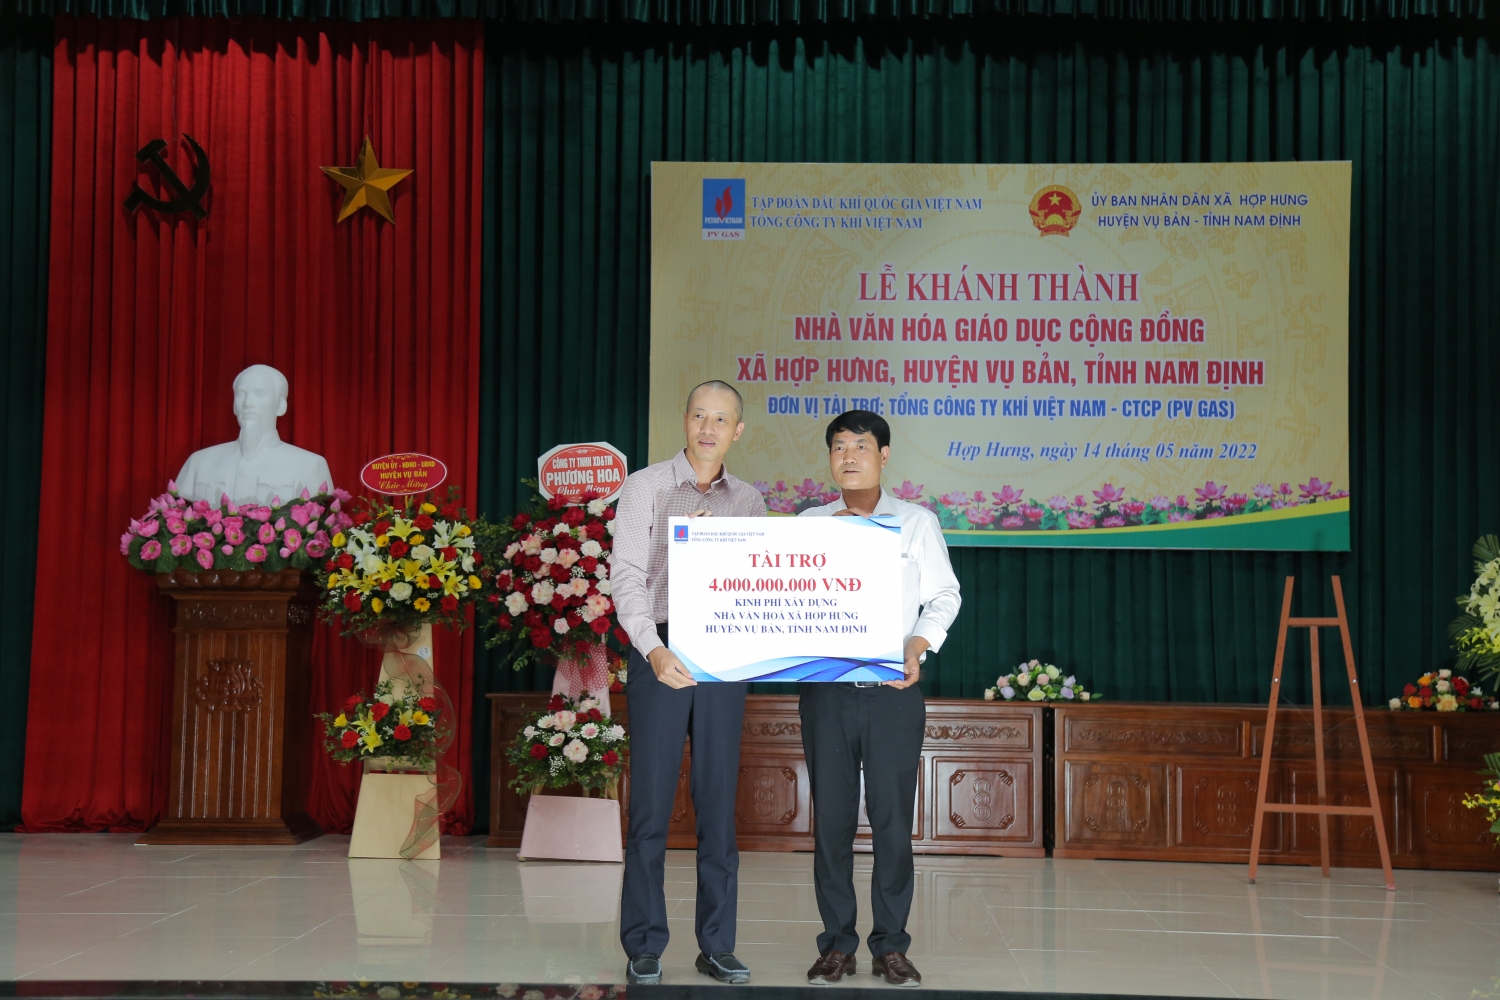 Petrovietnam/PV GAS khánh thành Nhà văn hóa giáo dục cộng đồng xã Hợp Hưng, huyện Vụ Bản, tỉnh Nam Định”